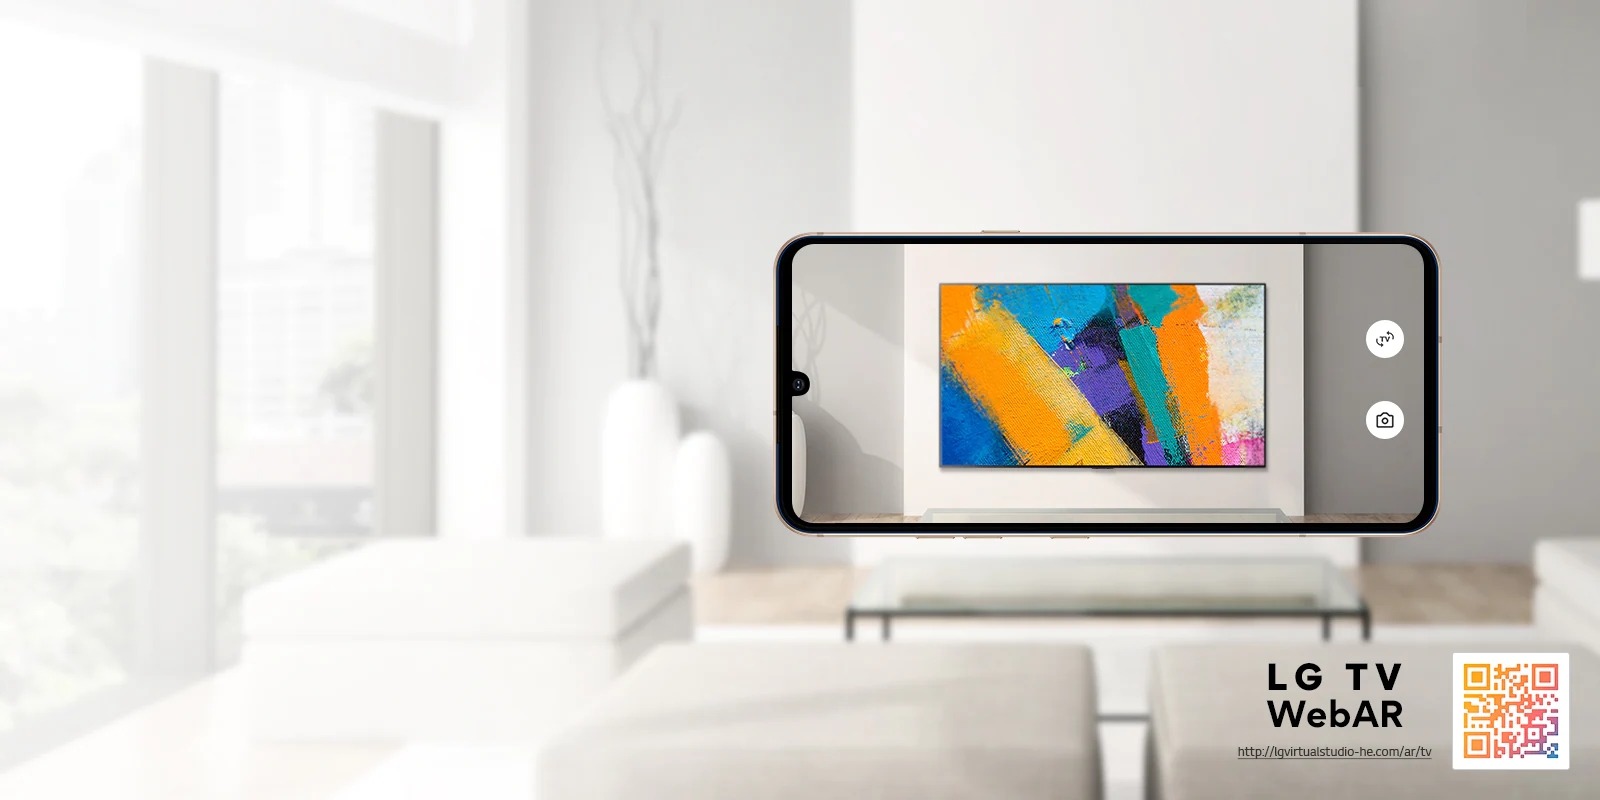 Це веб-доповнена симуляція зображення OLED-телевізора LG.  Зображення мобільних телефонів, накладених на мінімалістичний простір.  У нижньому правому куті є QR-код.